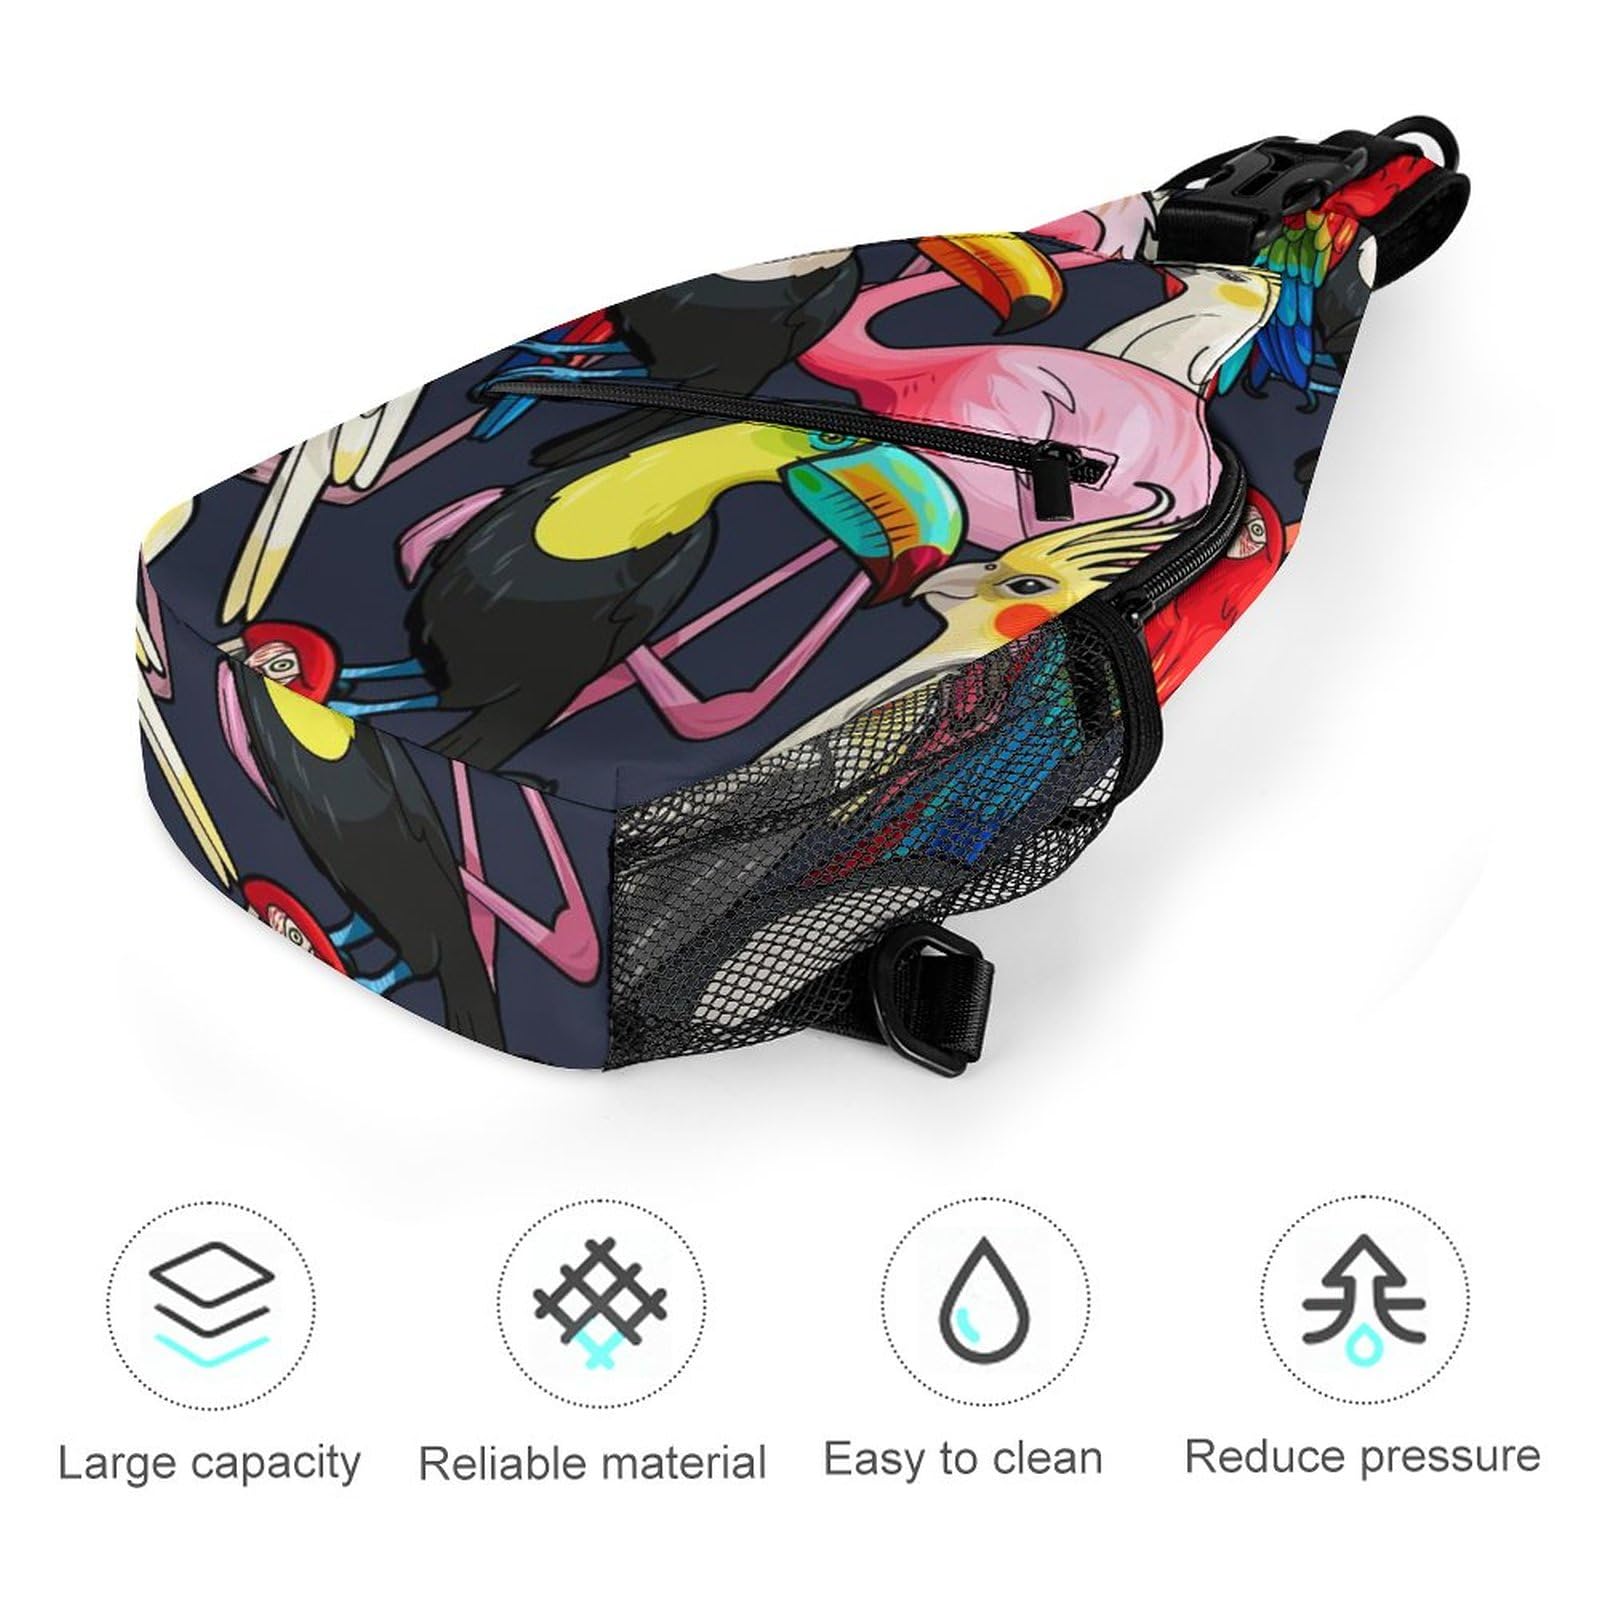 Tropical Birds Flamingo Parrot Sling Bag Full Print Crossbody Backpack Shoulder Bag Lightweight One Strap Travel Hiking Daypack